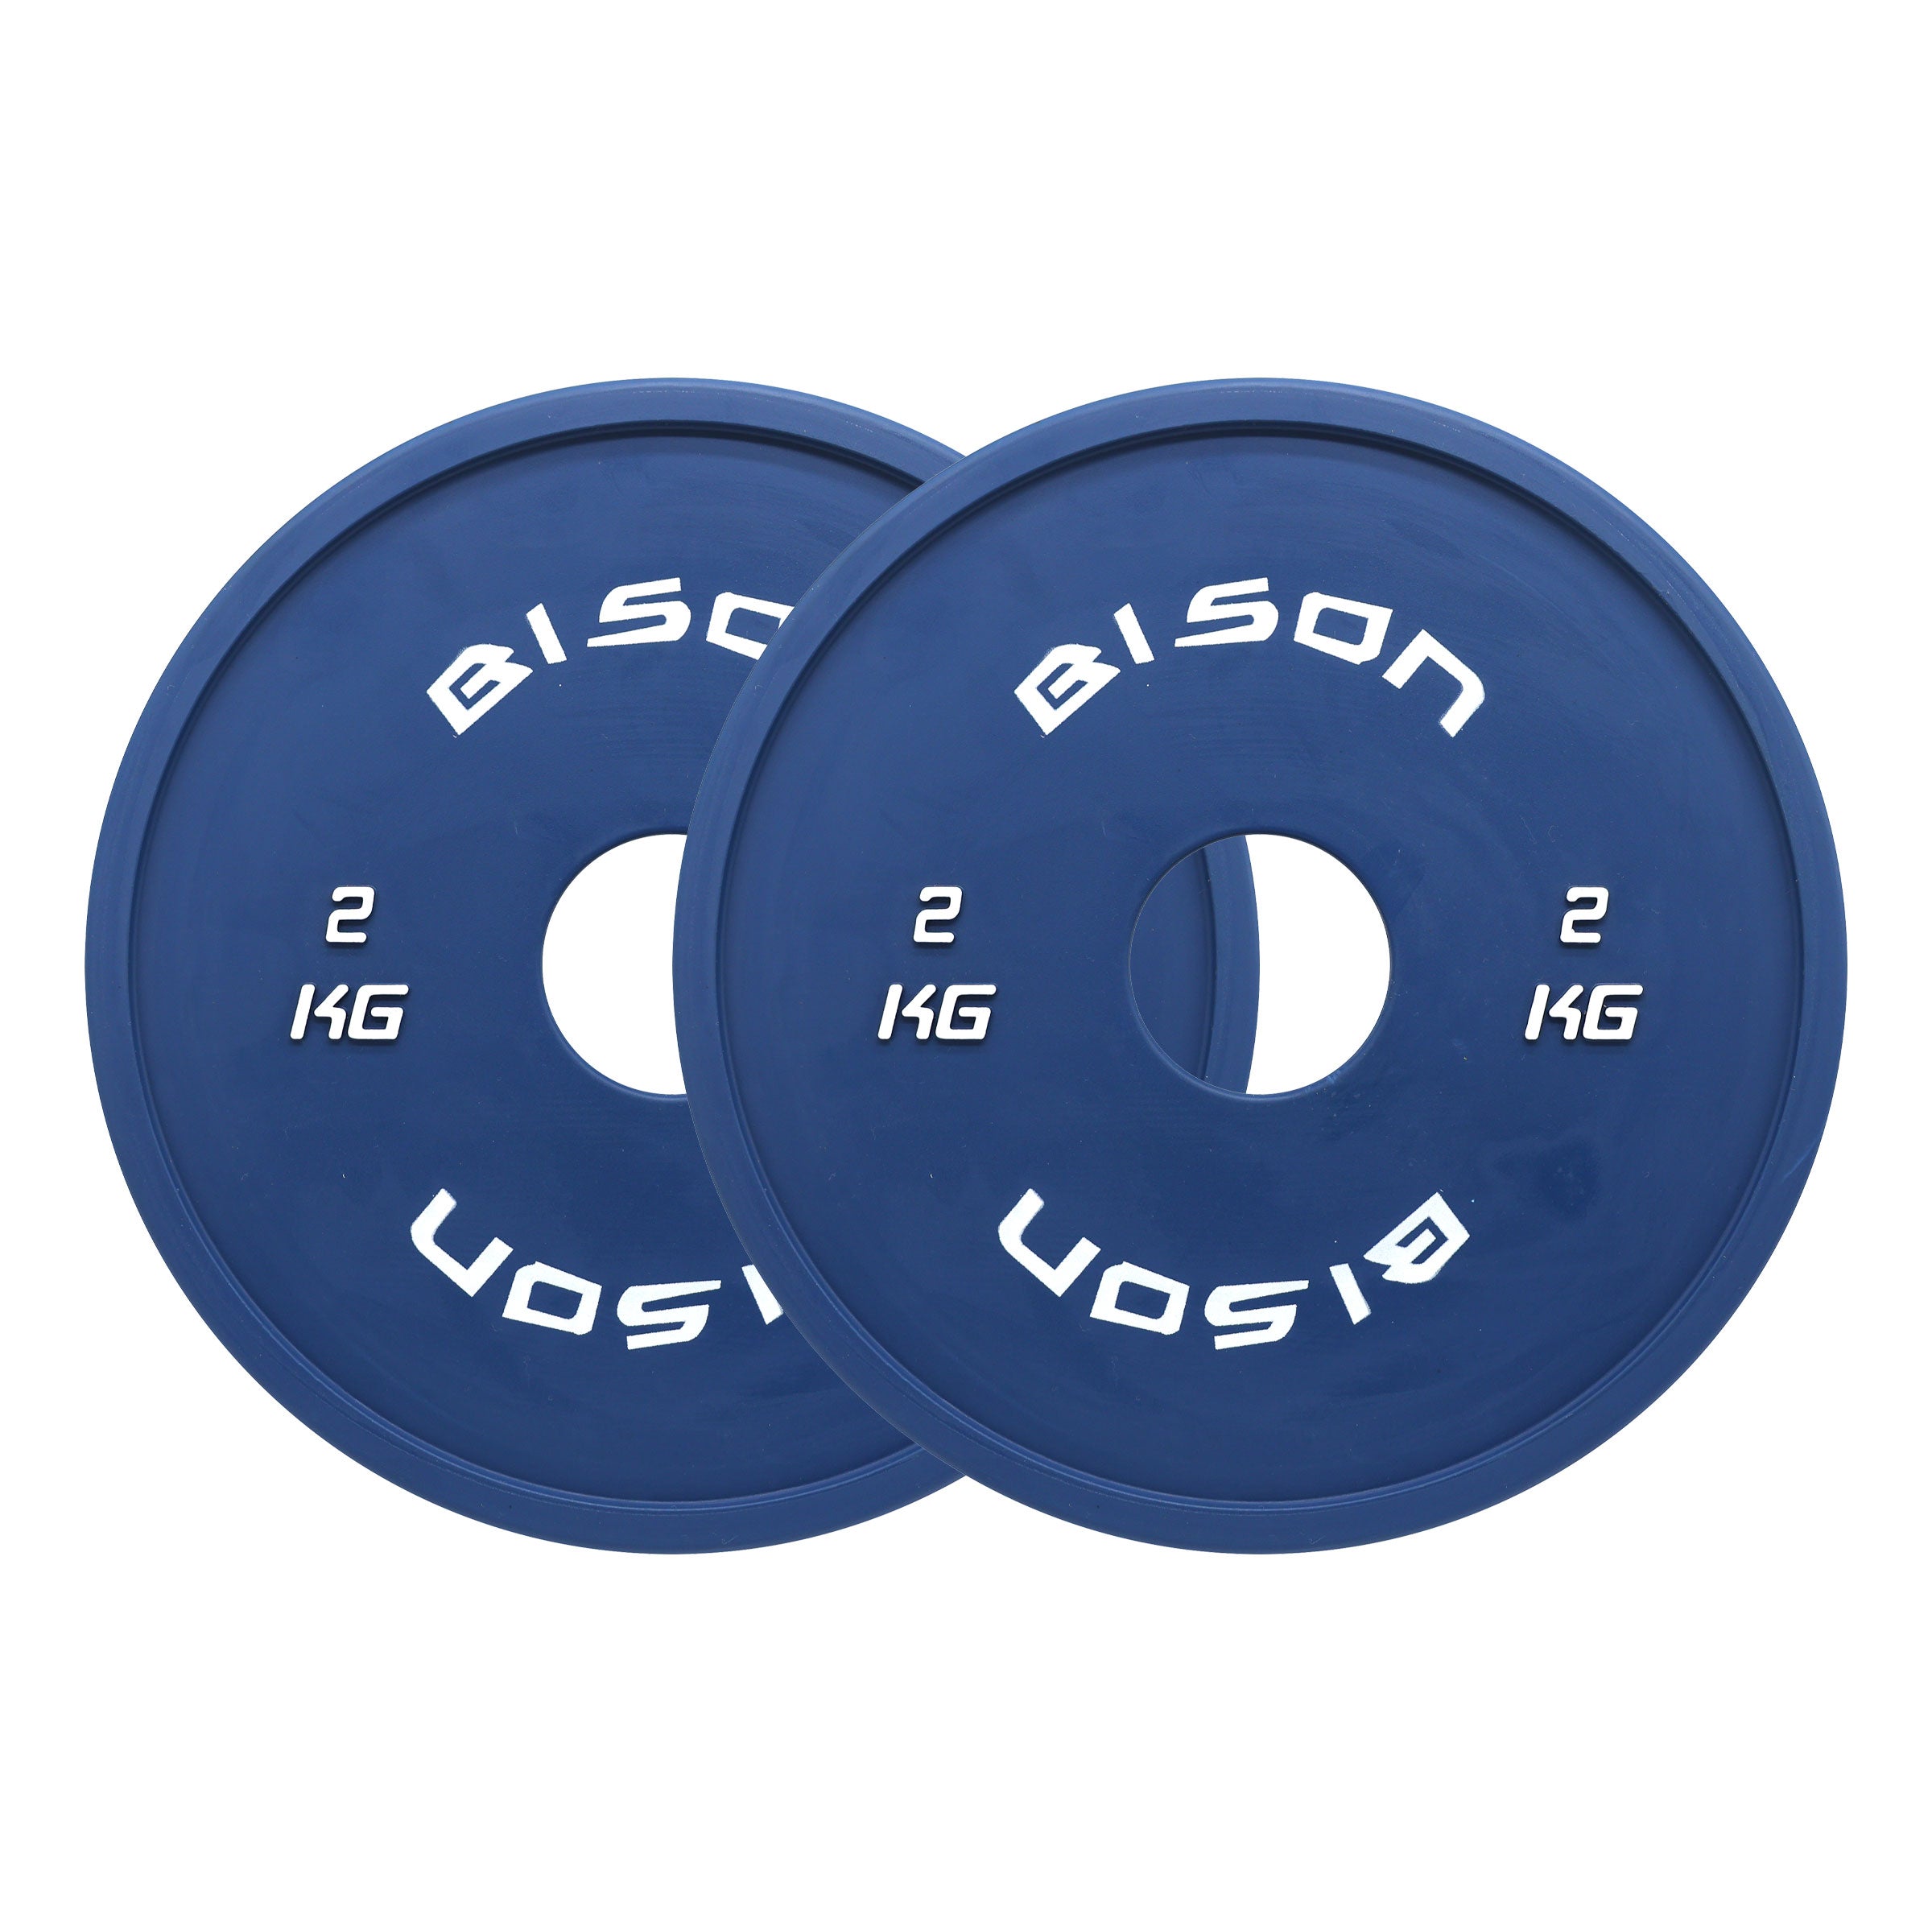 Bison Rubber 0.5kg - 2.5kg Fractional Plate Set - Wolverson Fitness